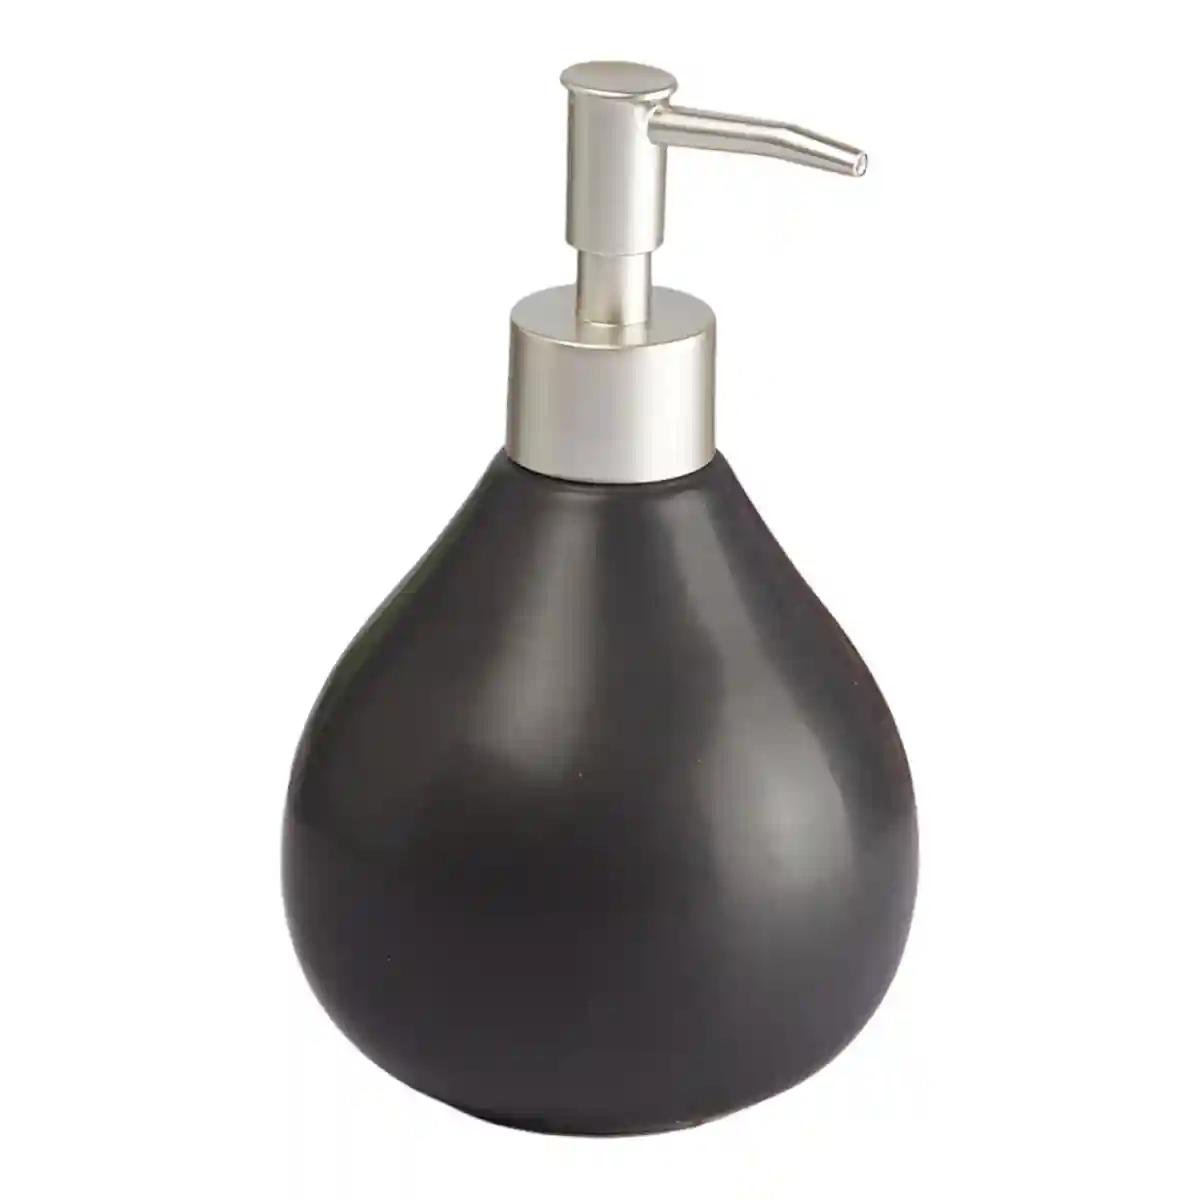 Kookee Ceramic Soap Dispenser for Bathroom handwash, refillable pump bottle for Kitchen hand wash basin, Set of 2 - Black (8013)